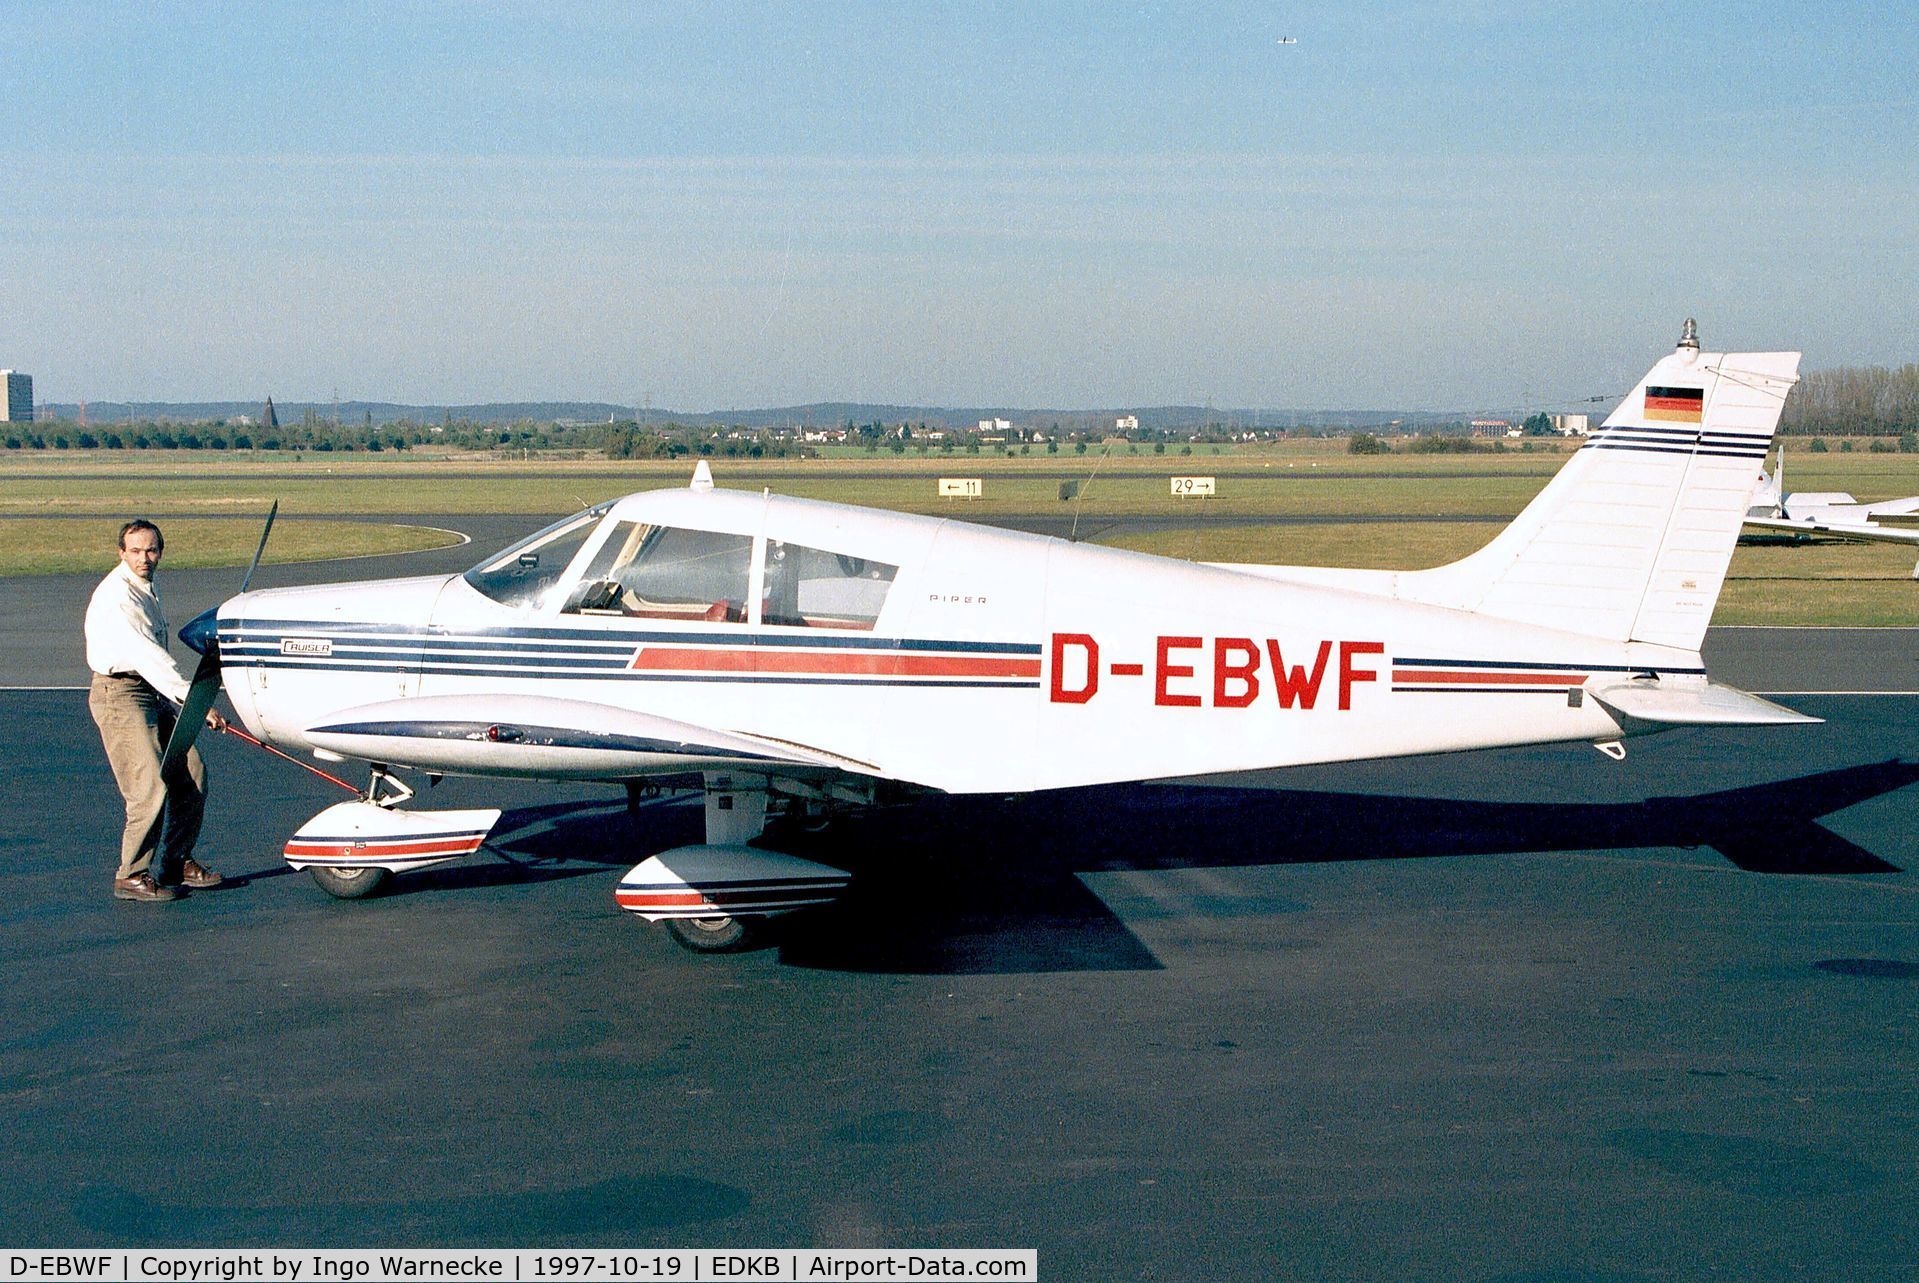 D-EBWF, 1972 Piper PA-28-140 Cherokee Cruiser C/N 28-7225454, Piper PA-28-140 Cherokee Cruiser at Bonn-Hangelar airfield